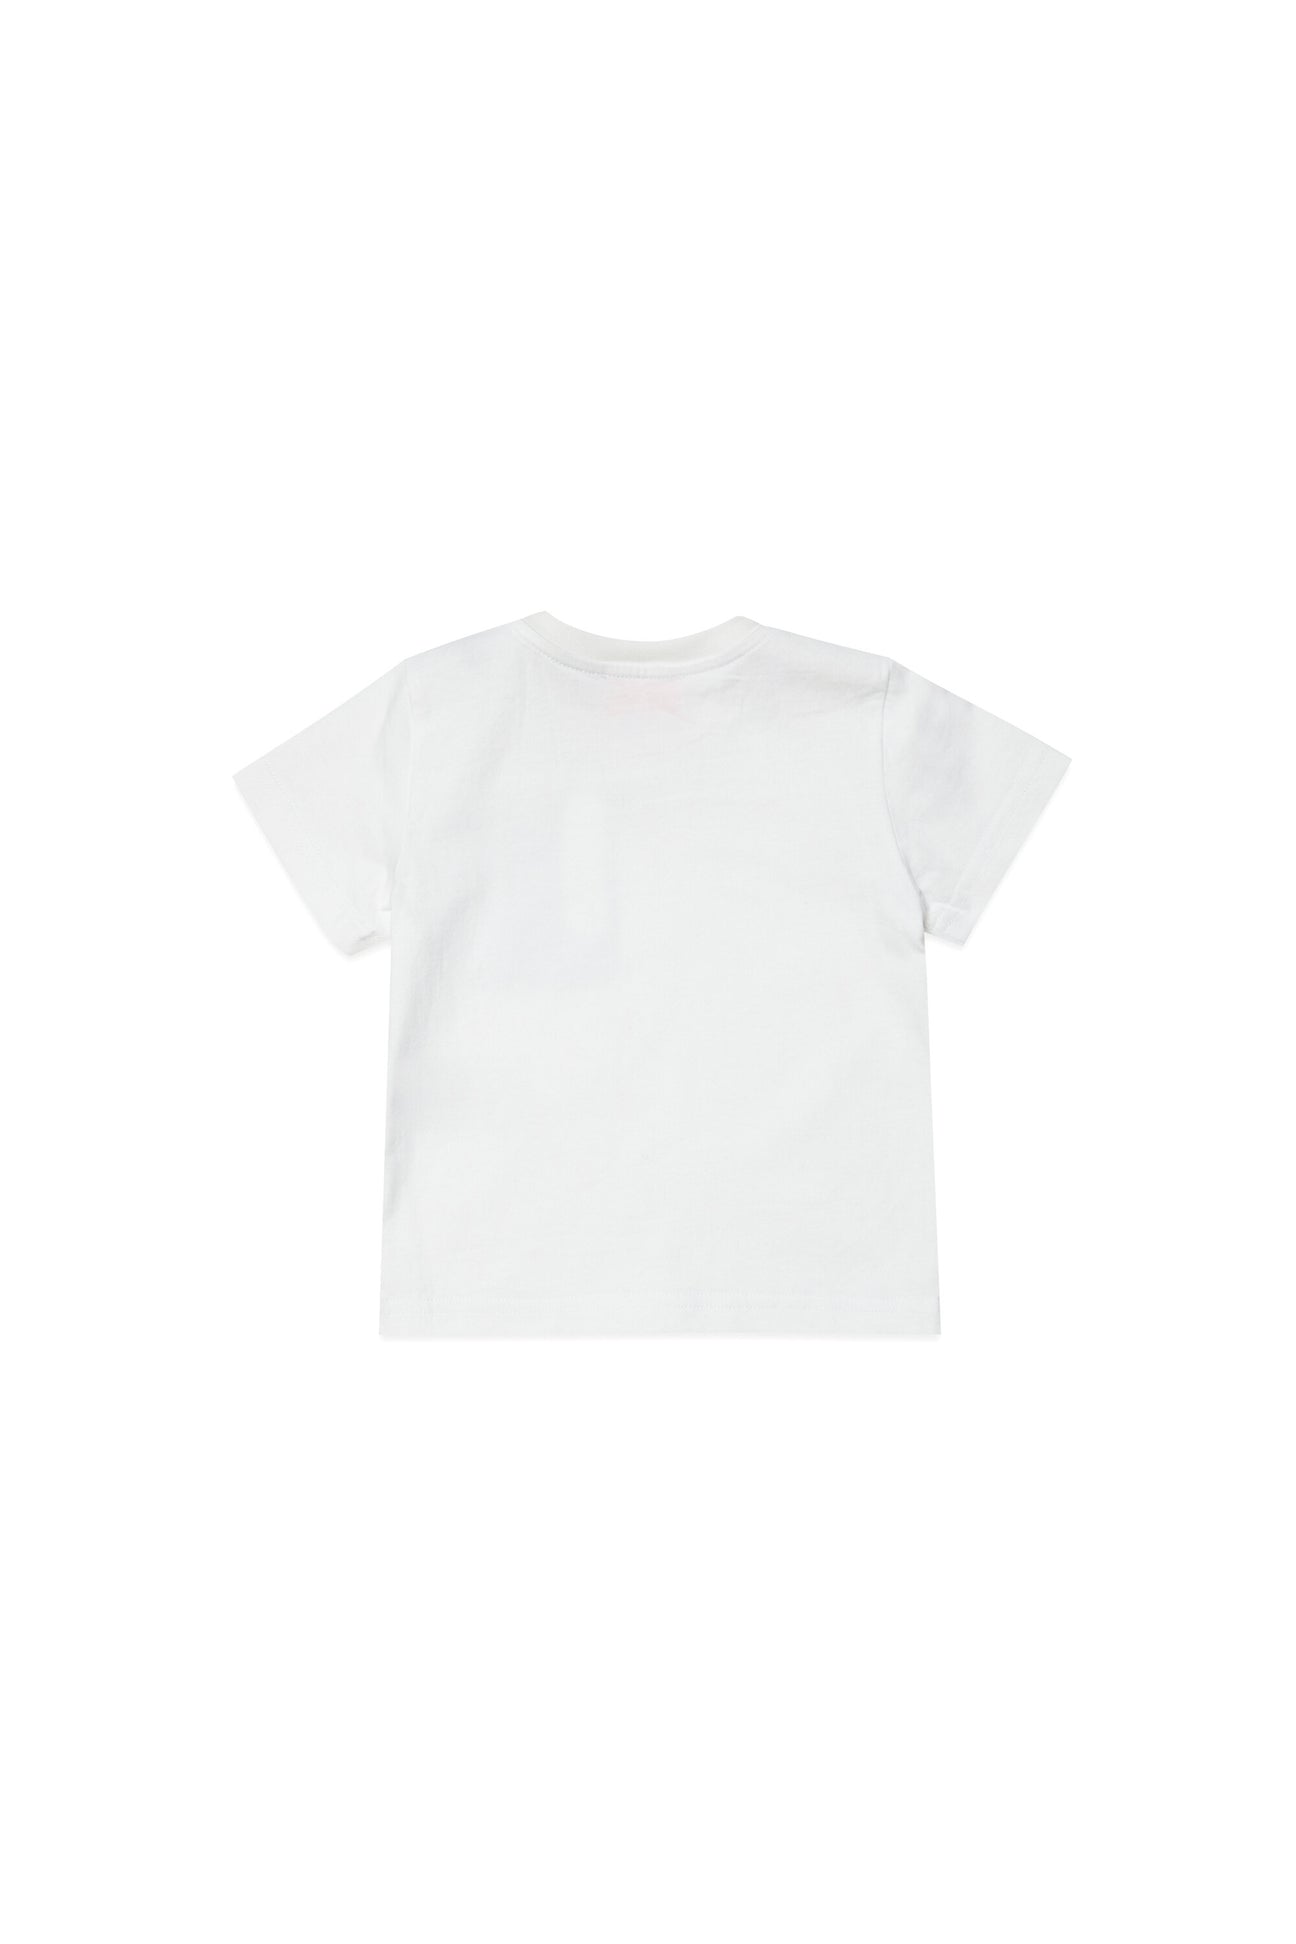 T-shirt with fluo pocket T-shirt with fluo pocket